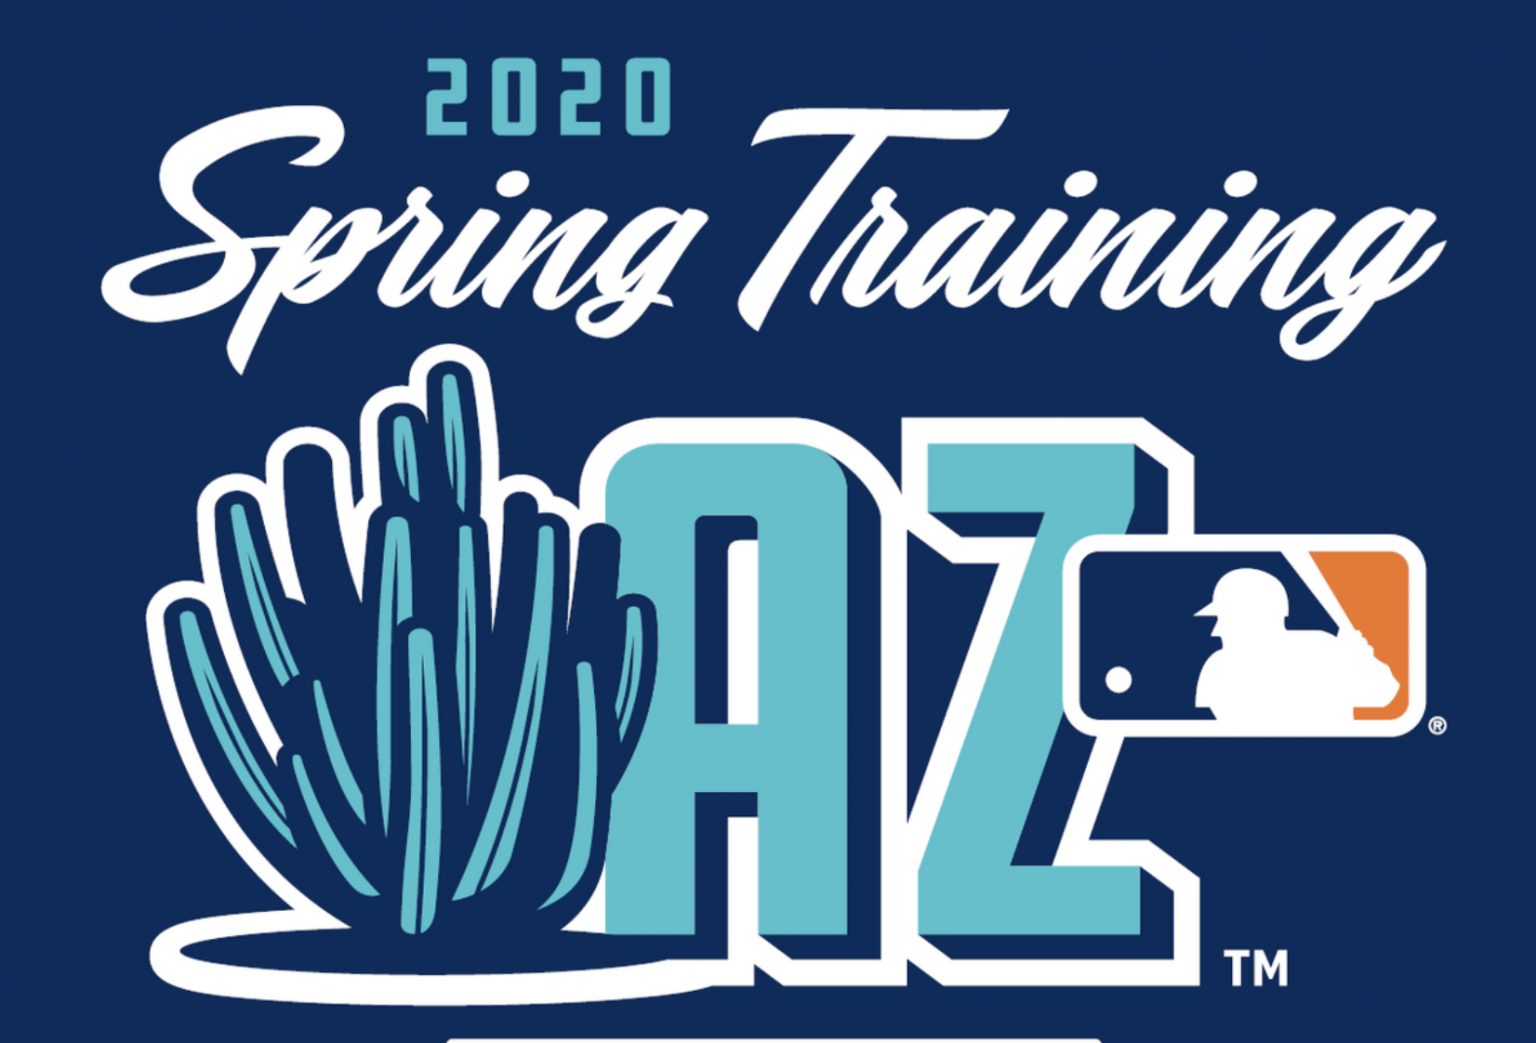 Scottsdale Baseball Spring Training 2020 — Best Scottsdale Realtor